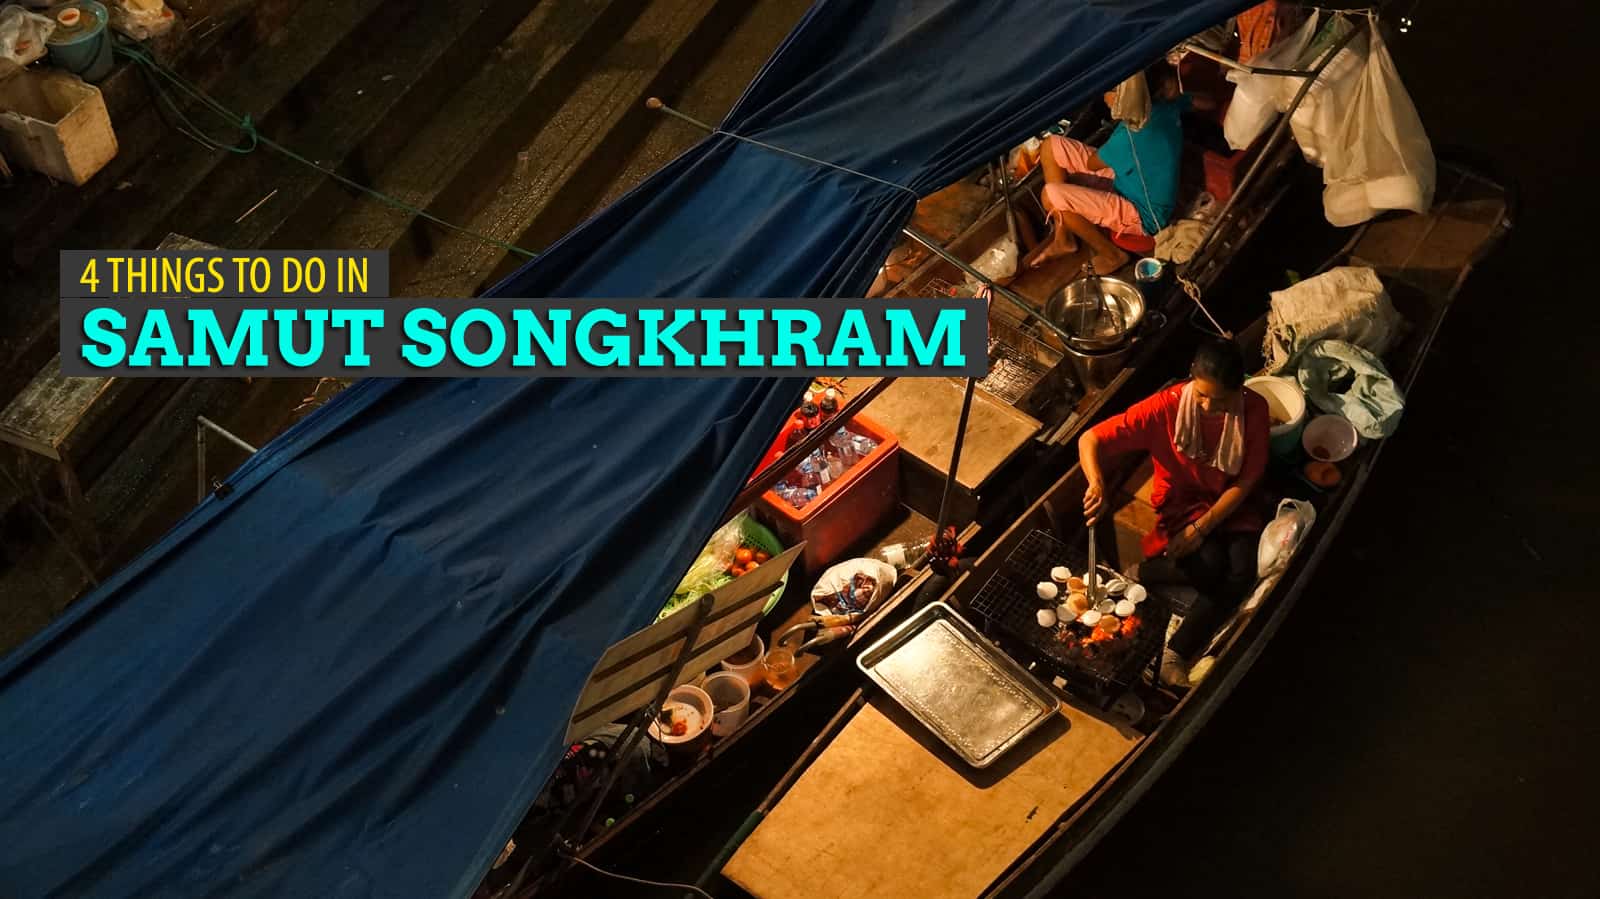 4 Things to Do in Samut Songkhram, Thailand